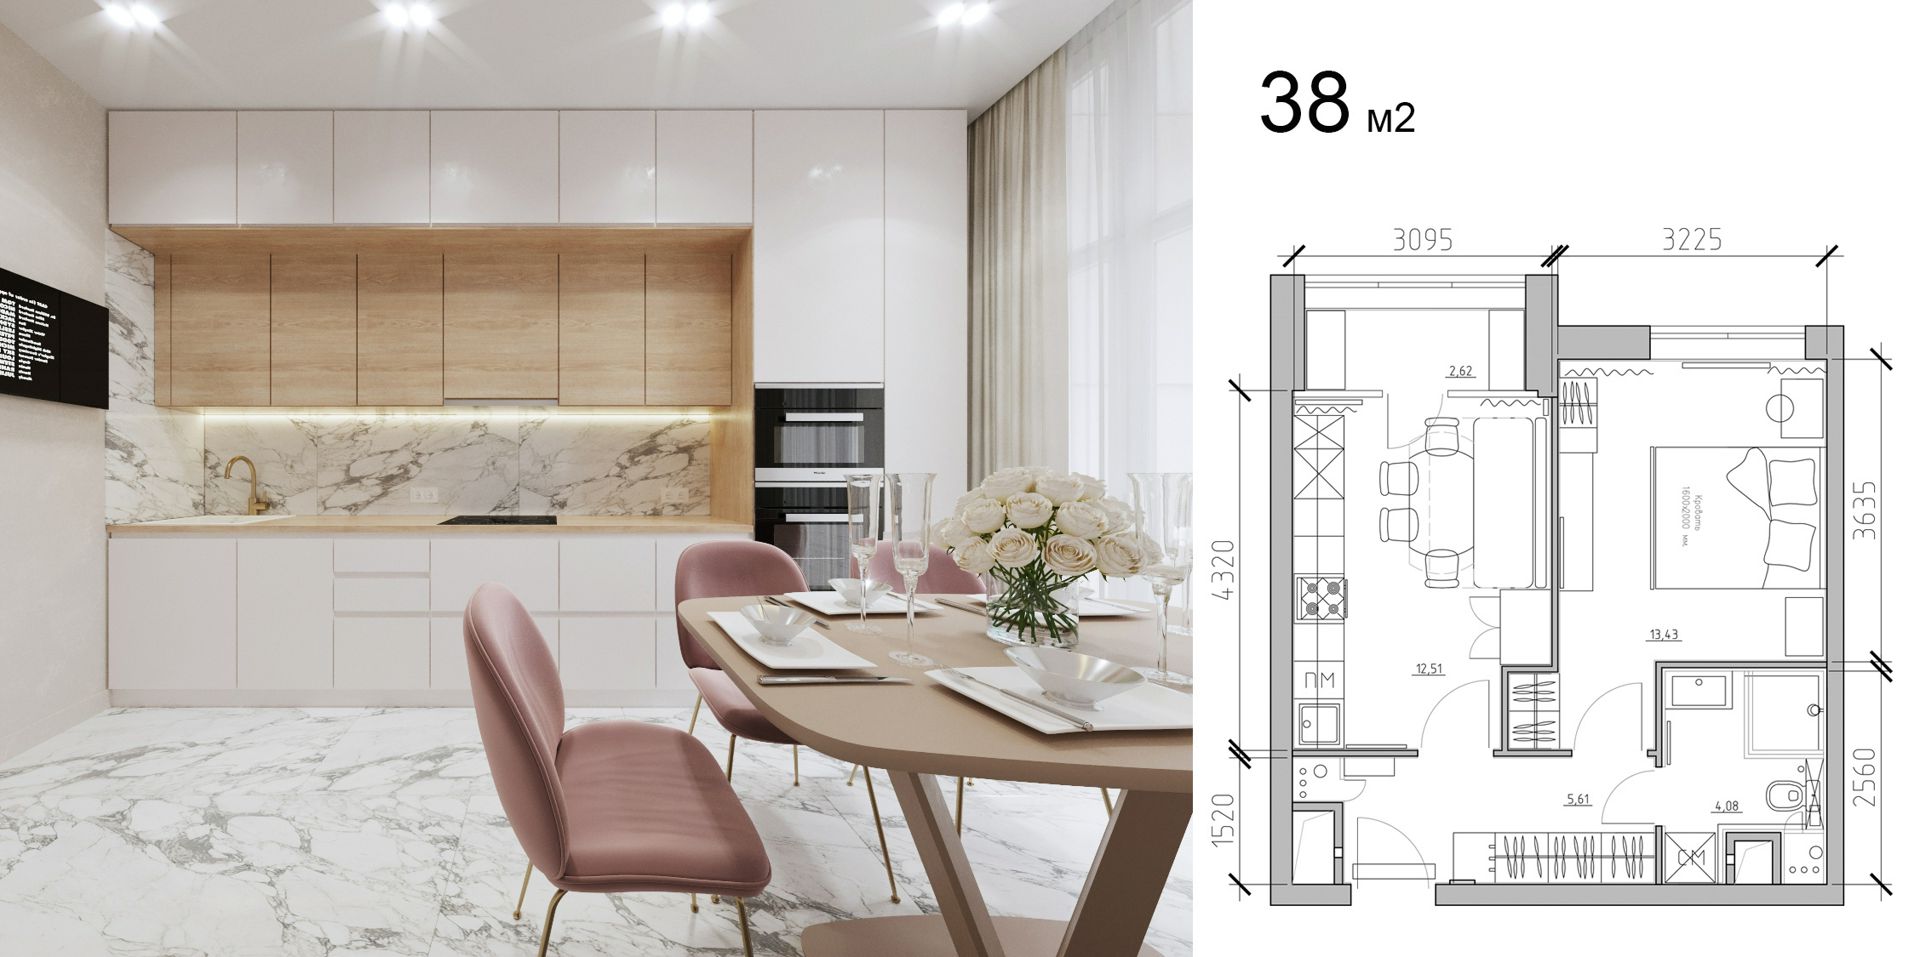 Дизайн проект интерьера типовой квартиры 38м2 подробный с чертежами и товарной ведомостью